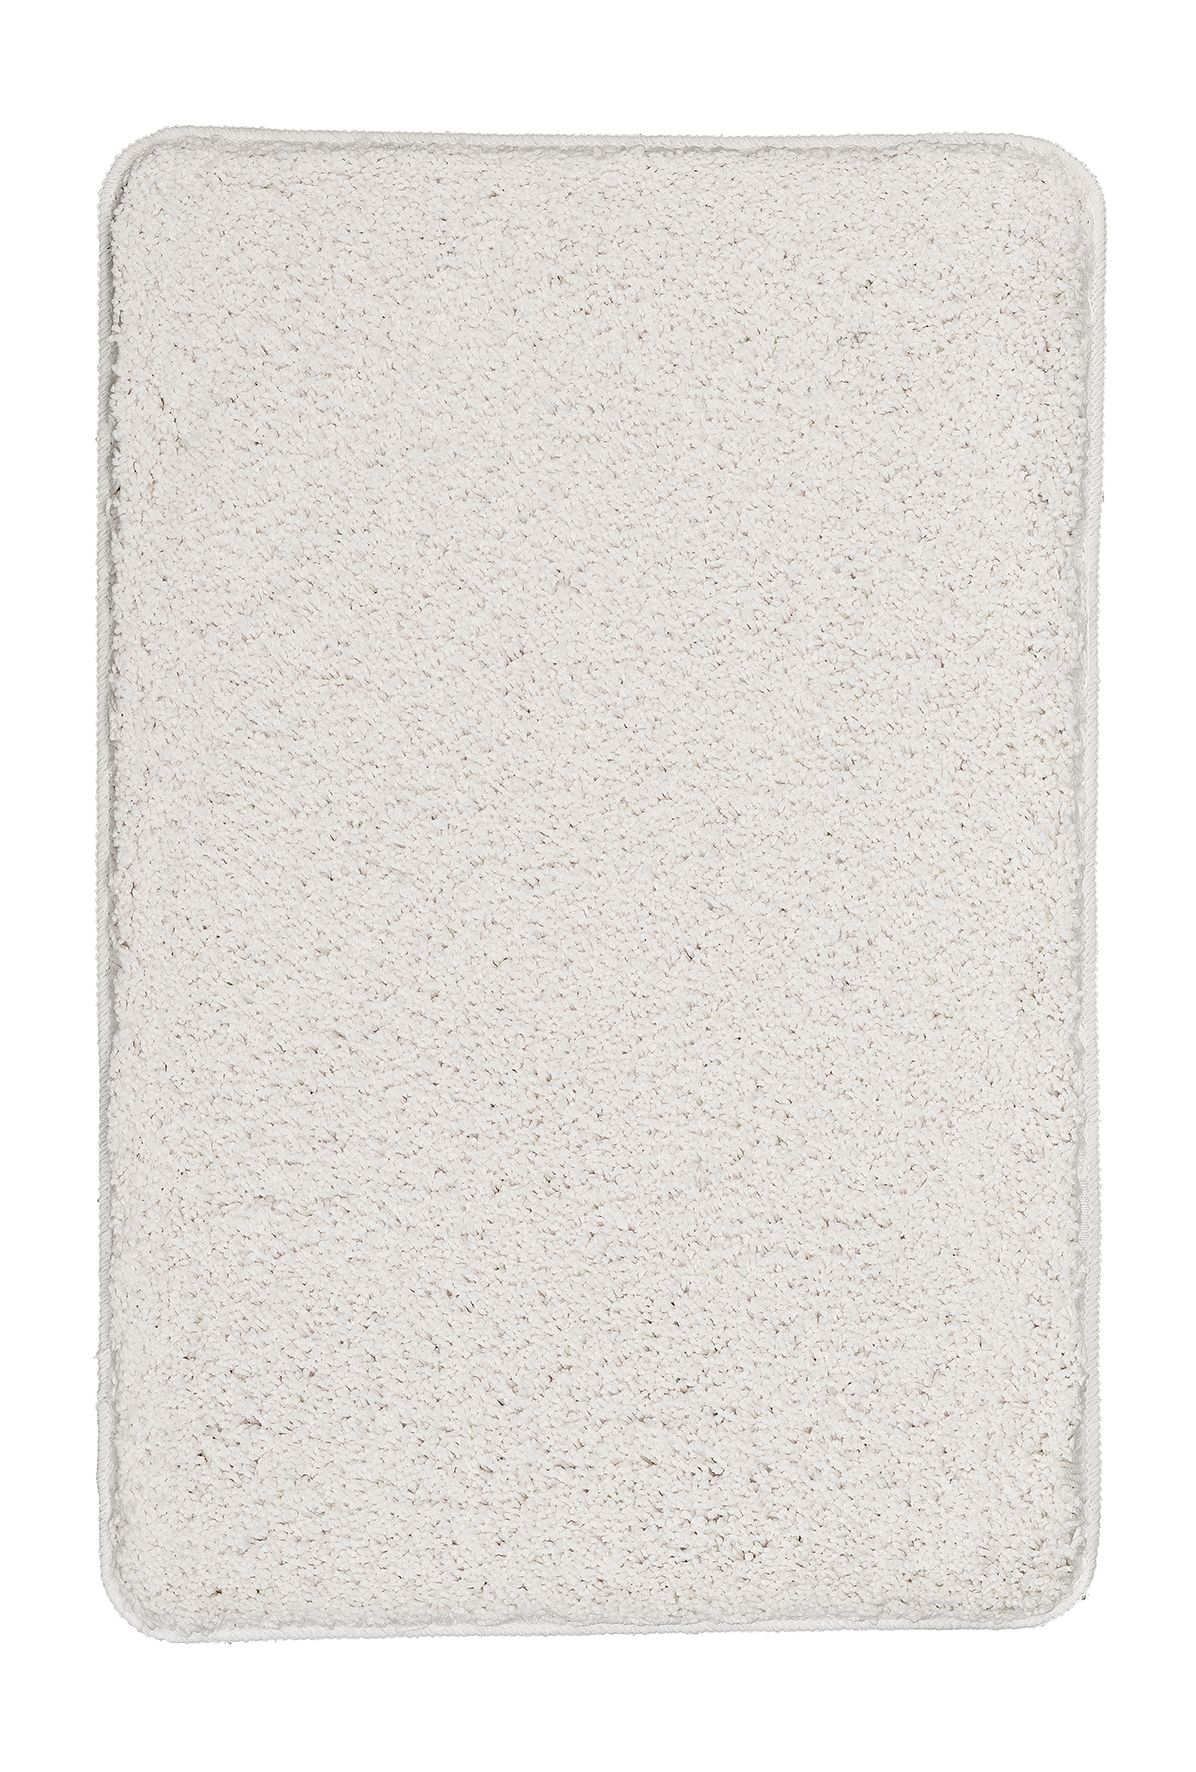 Badteppich, Trend Weiß, 60x 90 cm